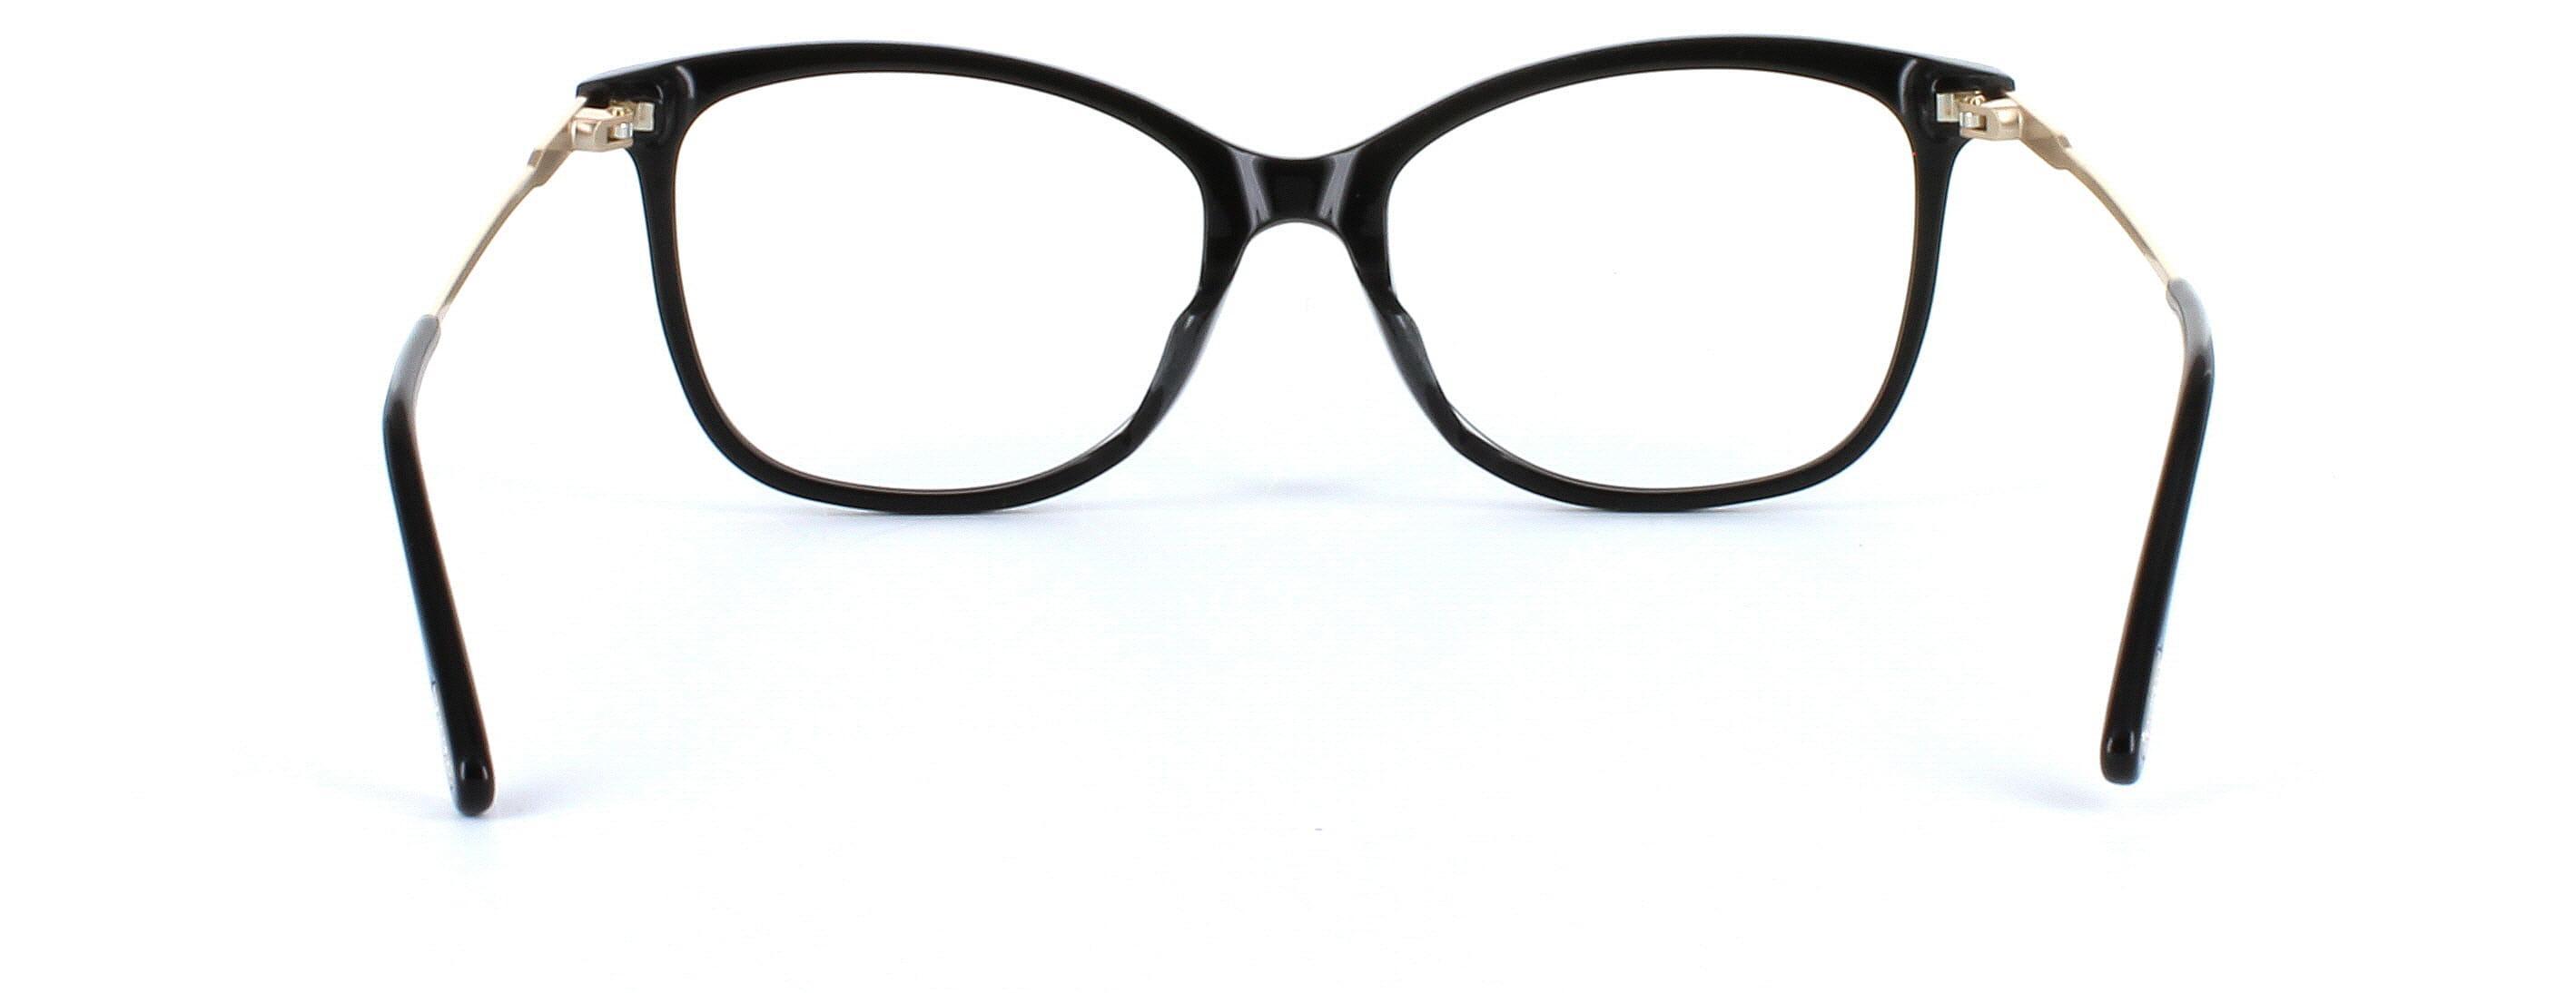 Tom Ford 5510 - Women's black acetate glasses - image 3